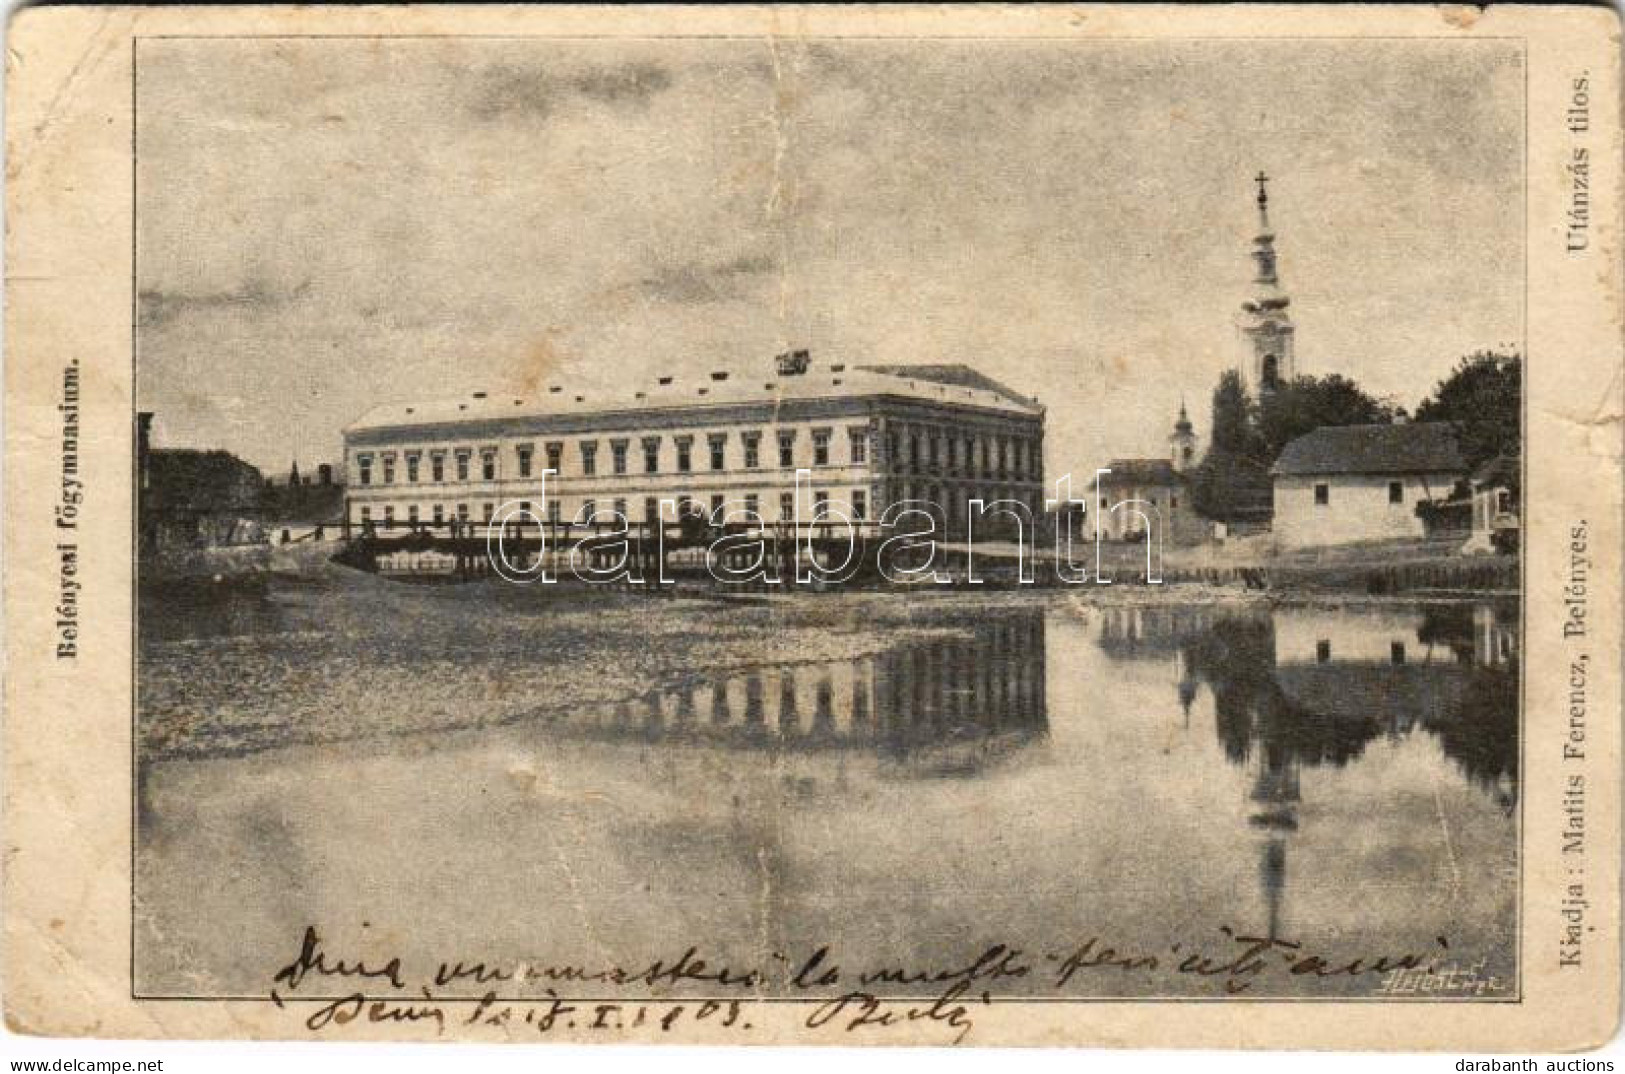 * T4 1903 Belényes, Beius; Főgimnázium. Matits Ferenc Kiadása / School (fa) - Unclassified